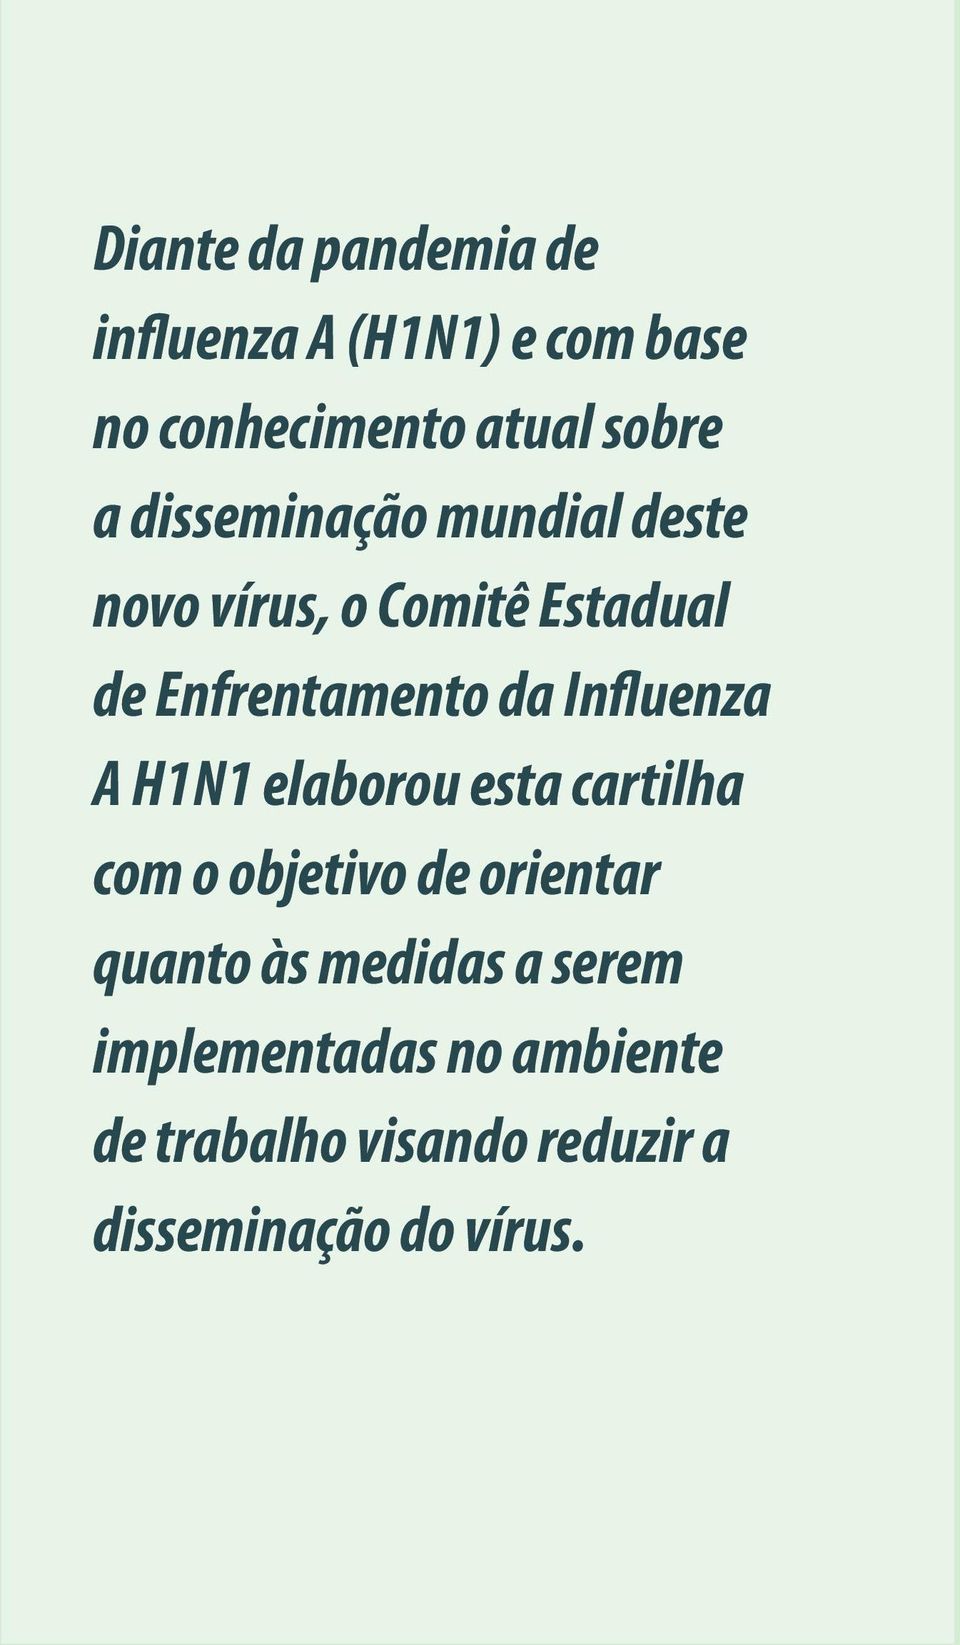 Influenza A H1N1 elaborou esta cartilha com o objetivo de orientar quanto às